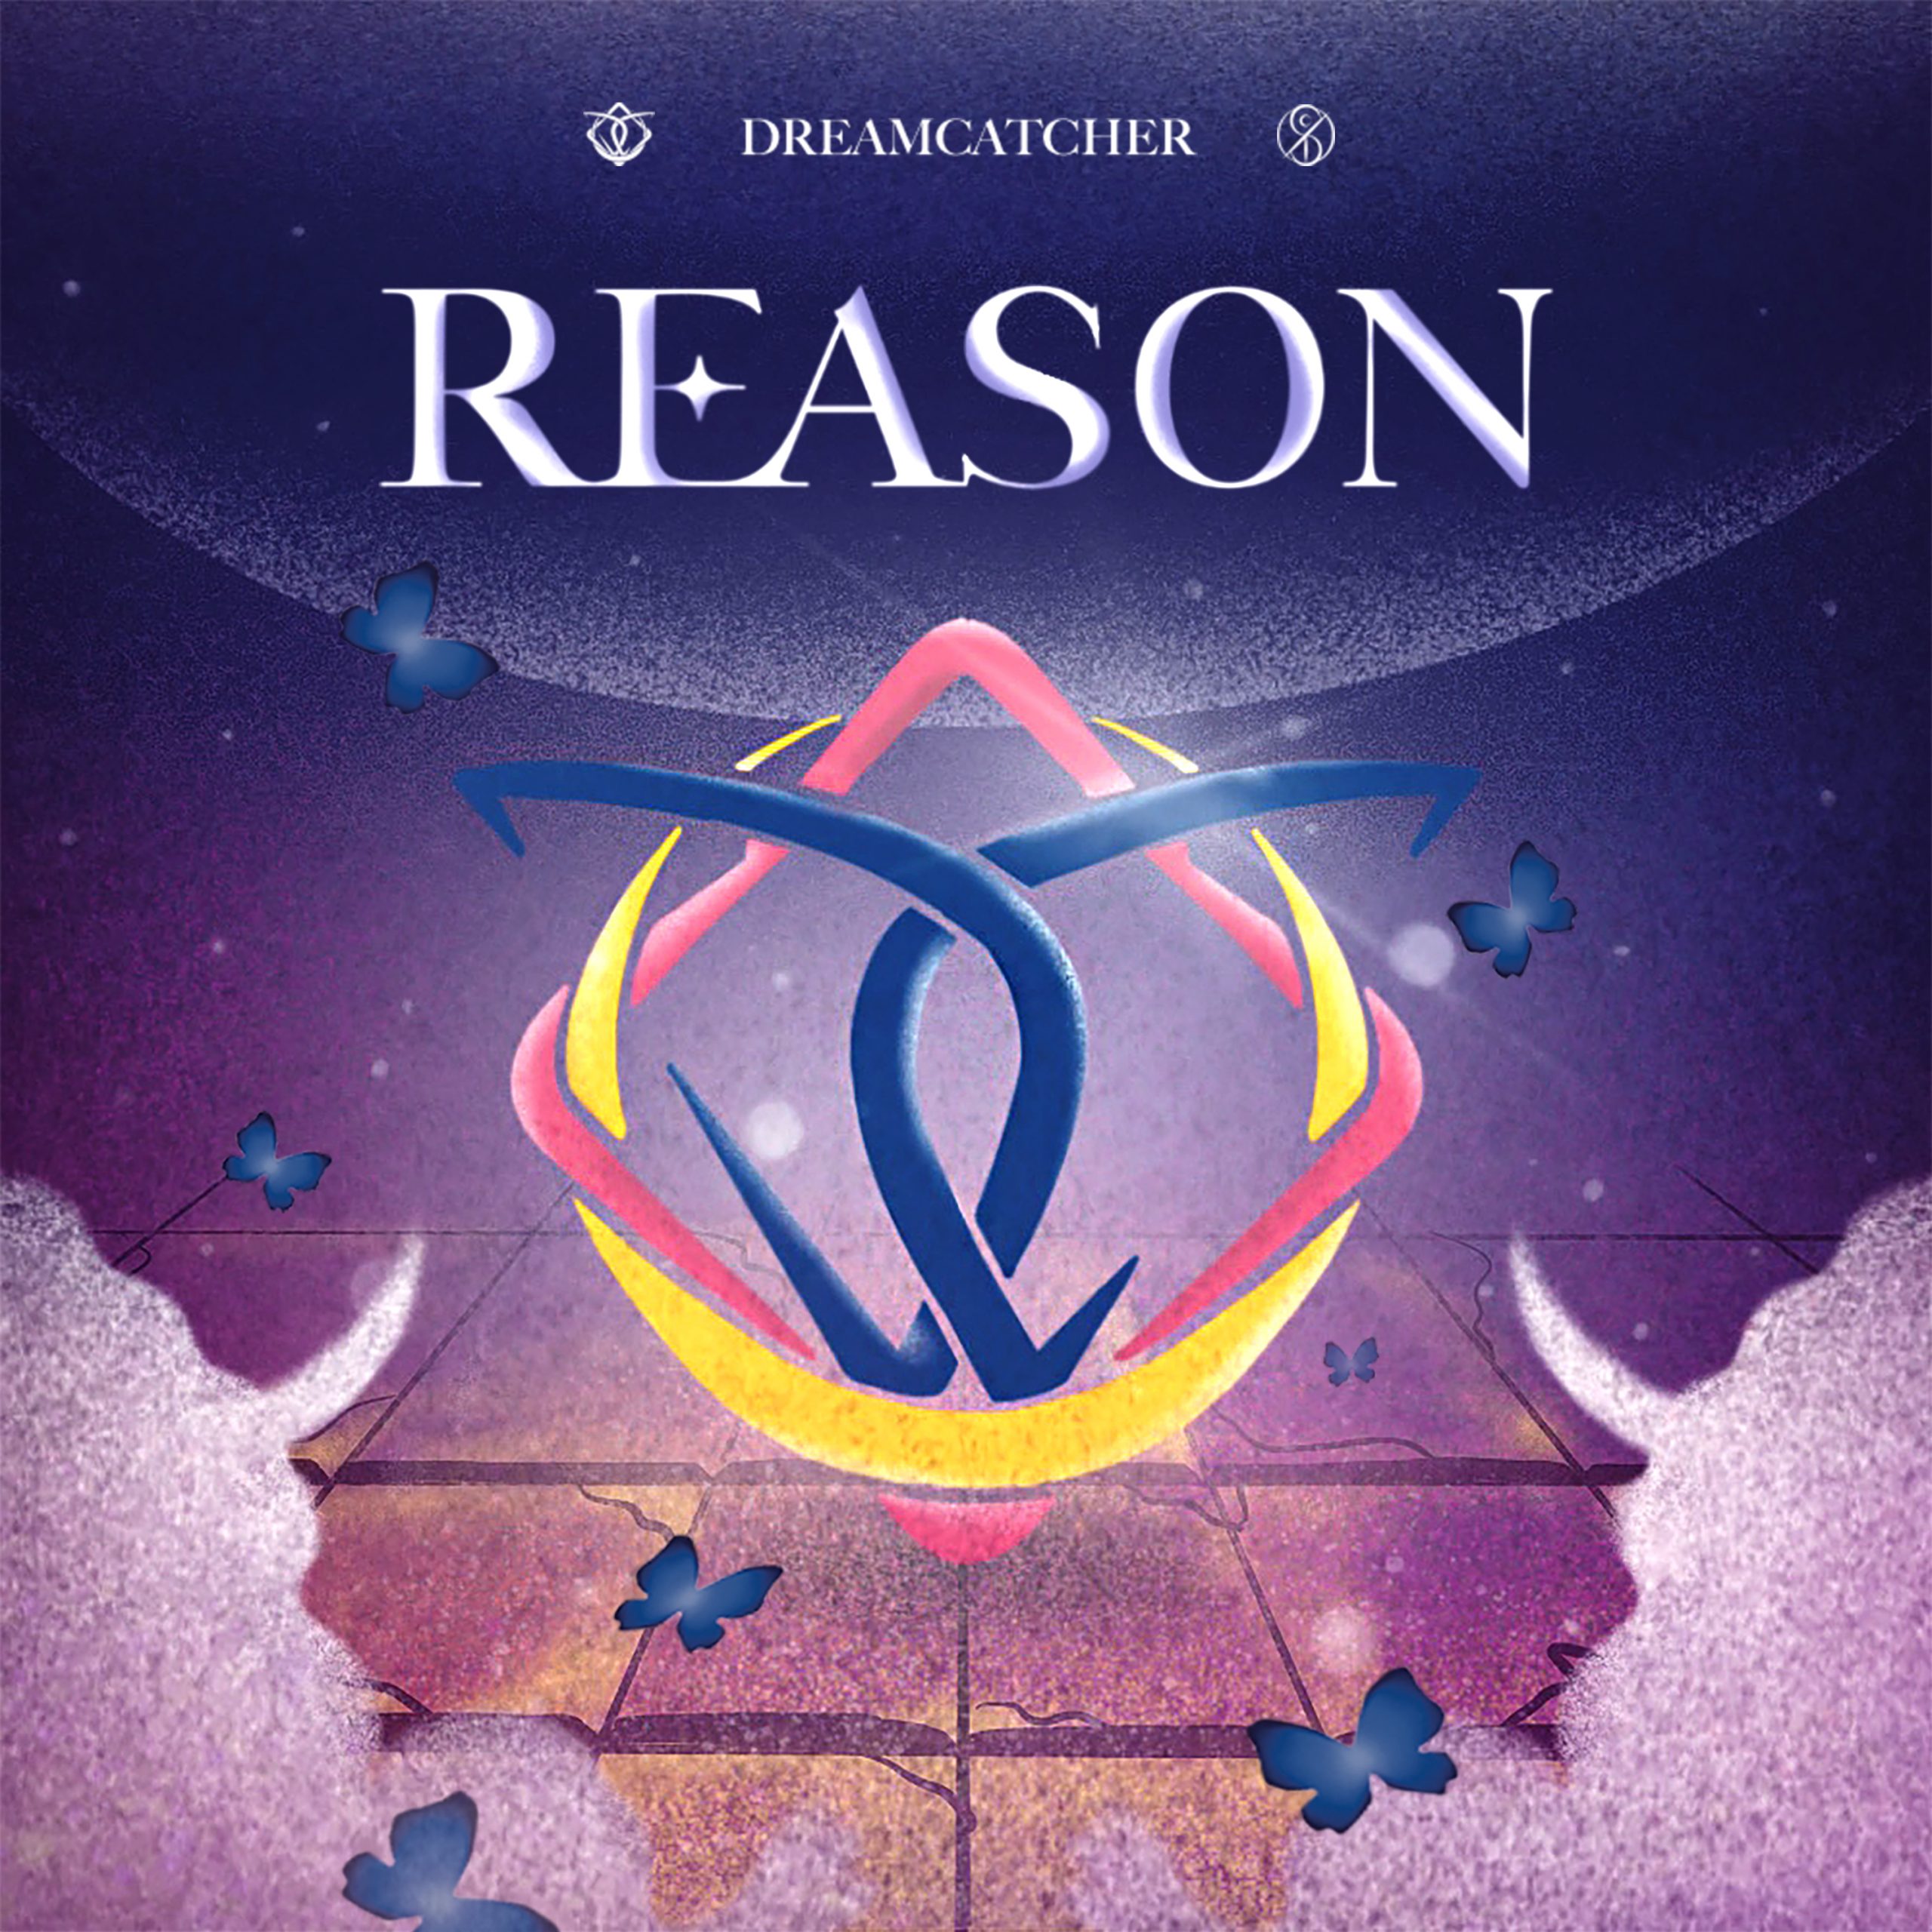 Dreamcatcher выпустит фан-песню "Reason", чтобы отметить 6-ю годовщину со дня дебюта